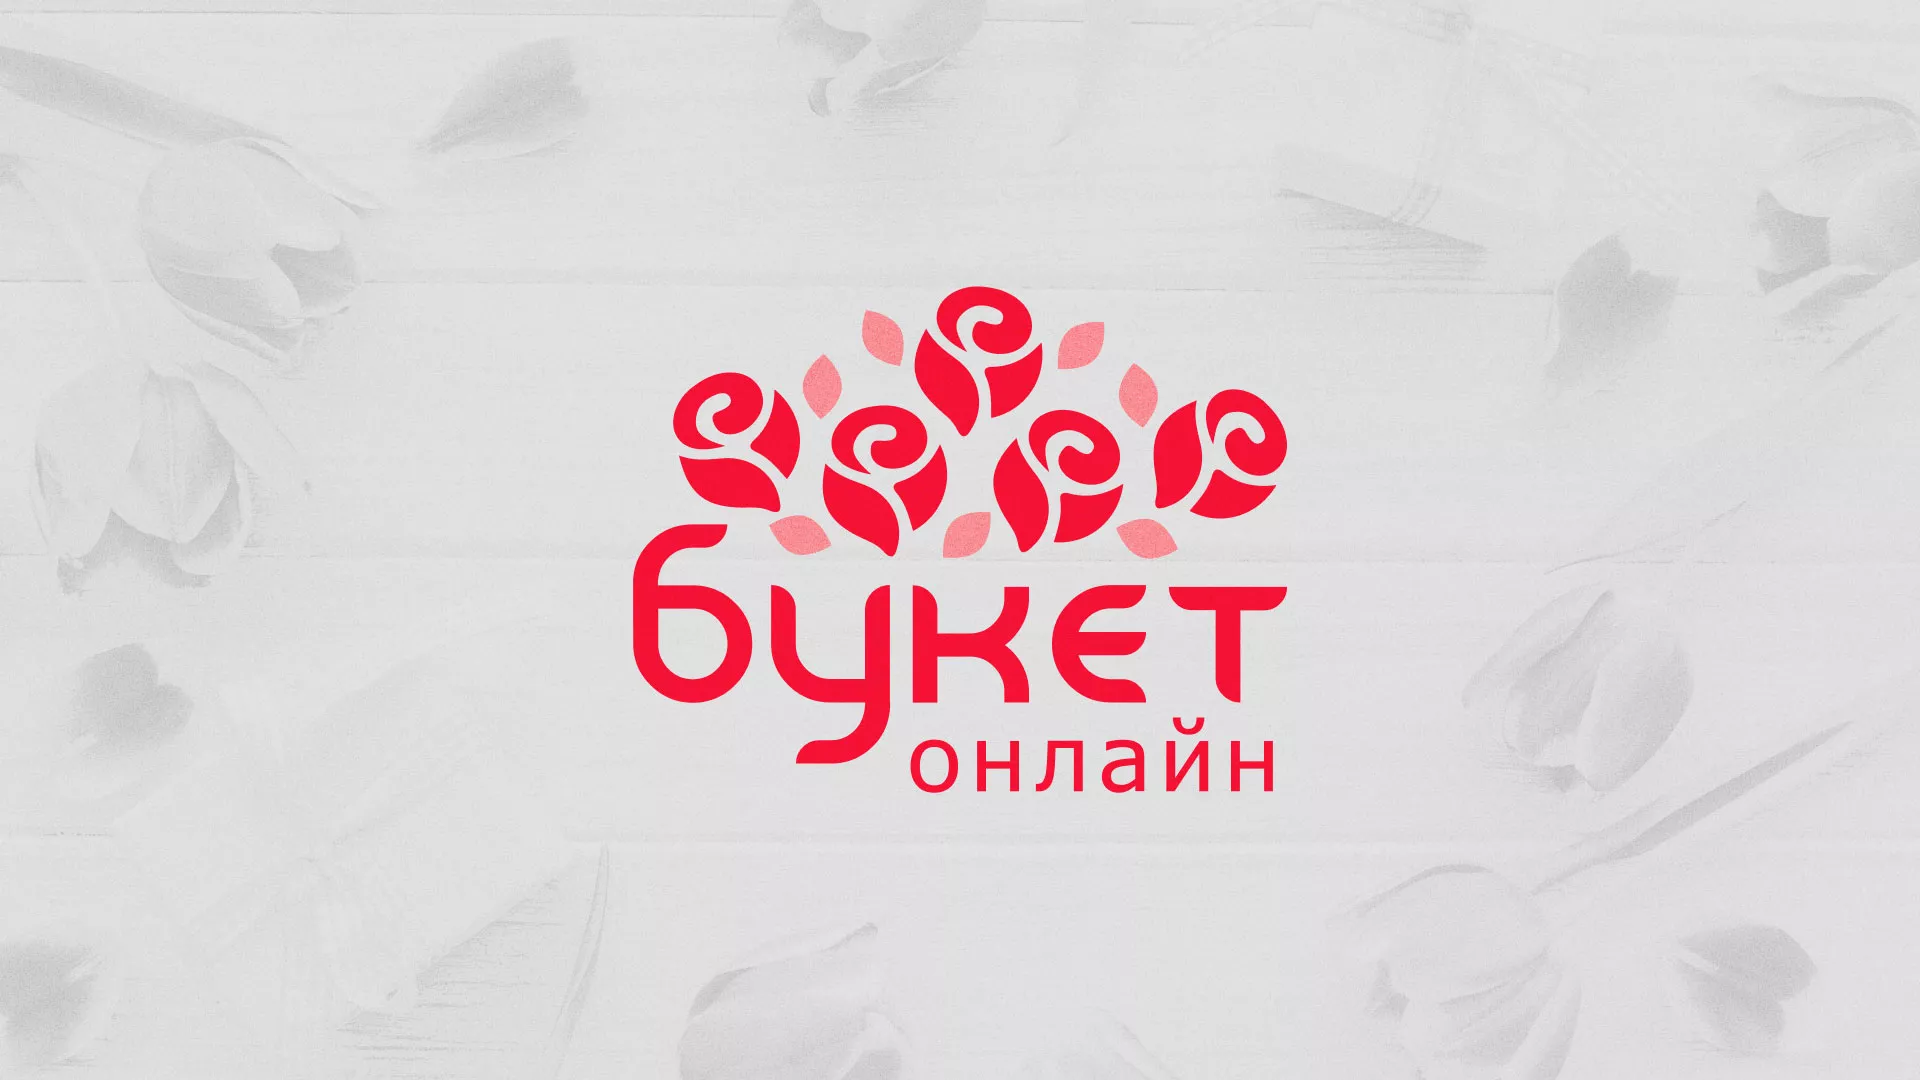 Создание интернет-магазина «Букет-онлайн» по цветам в Конаково